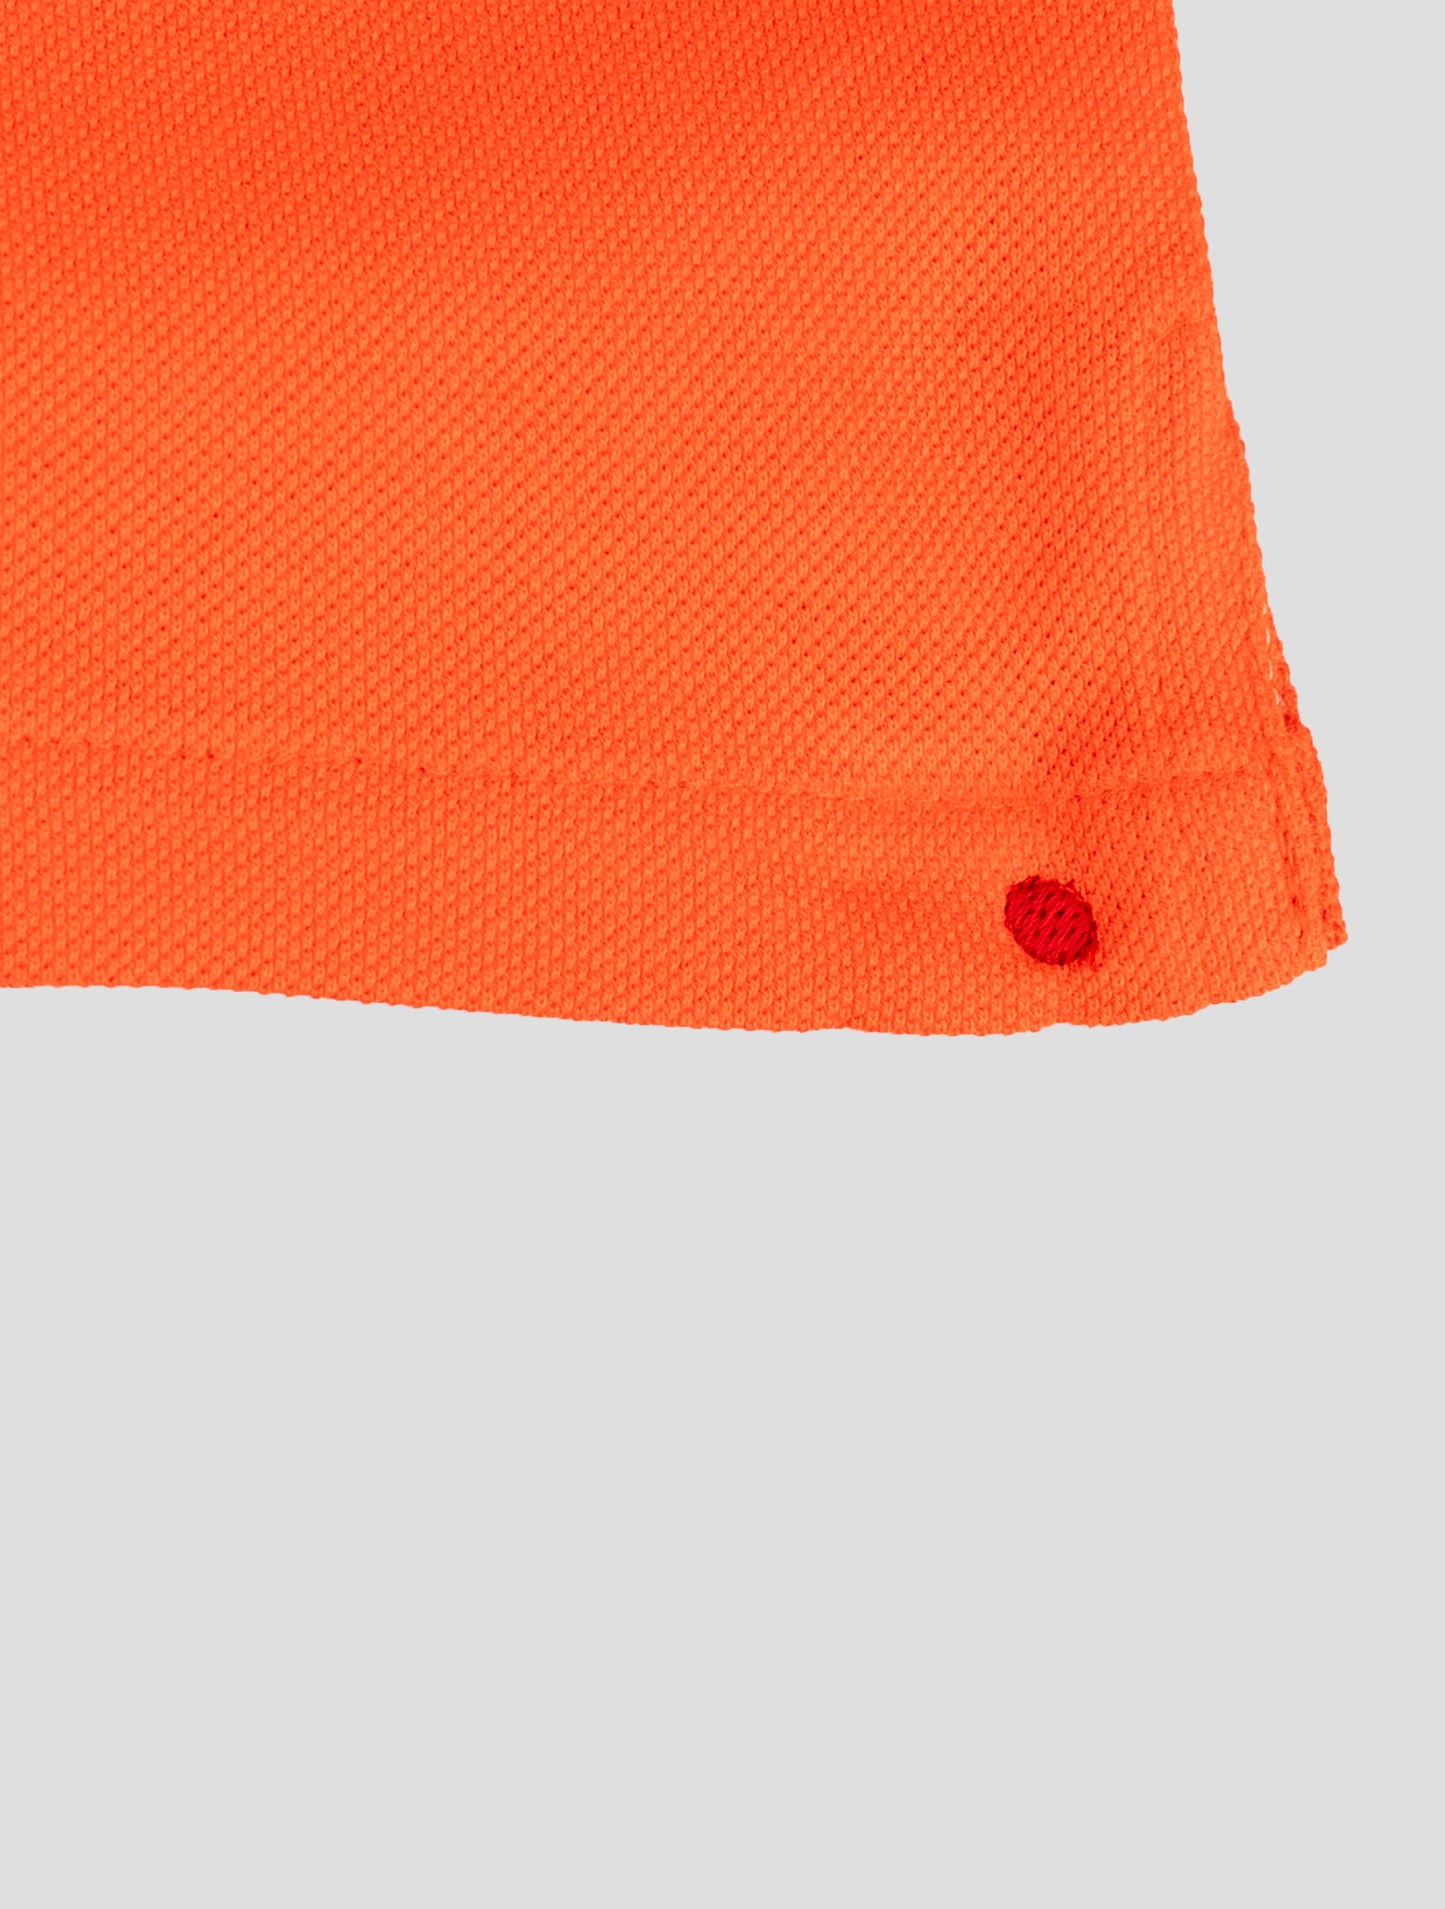 Kiton matchende outfit - Blå Mariano og Orange korte bukser træningsdragt